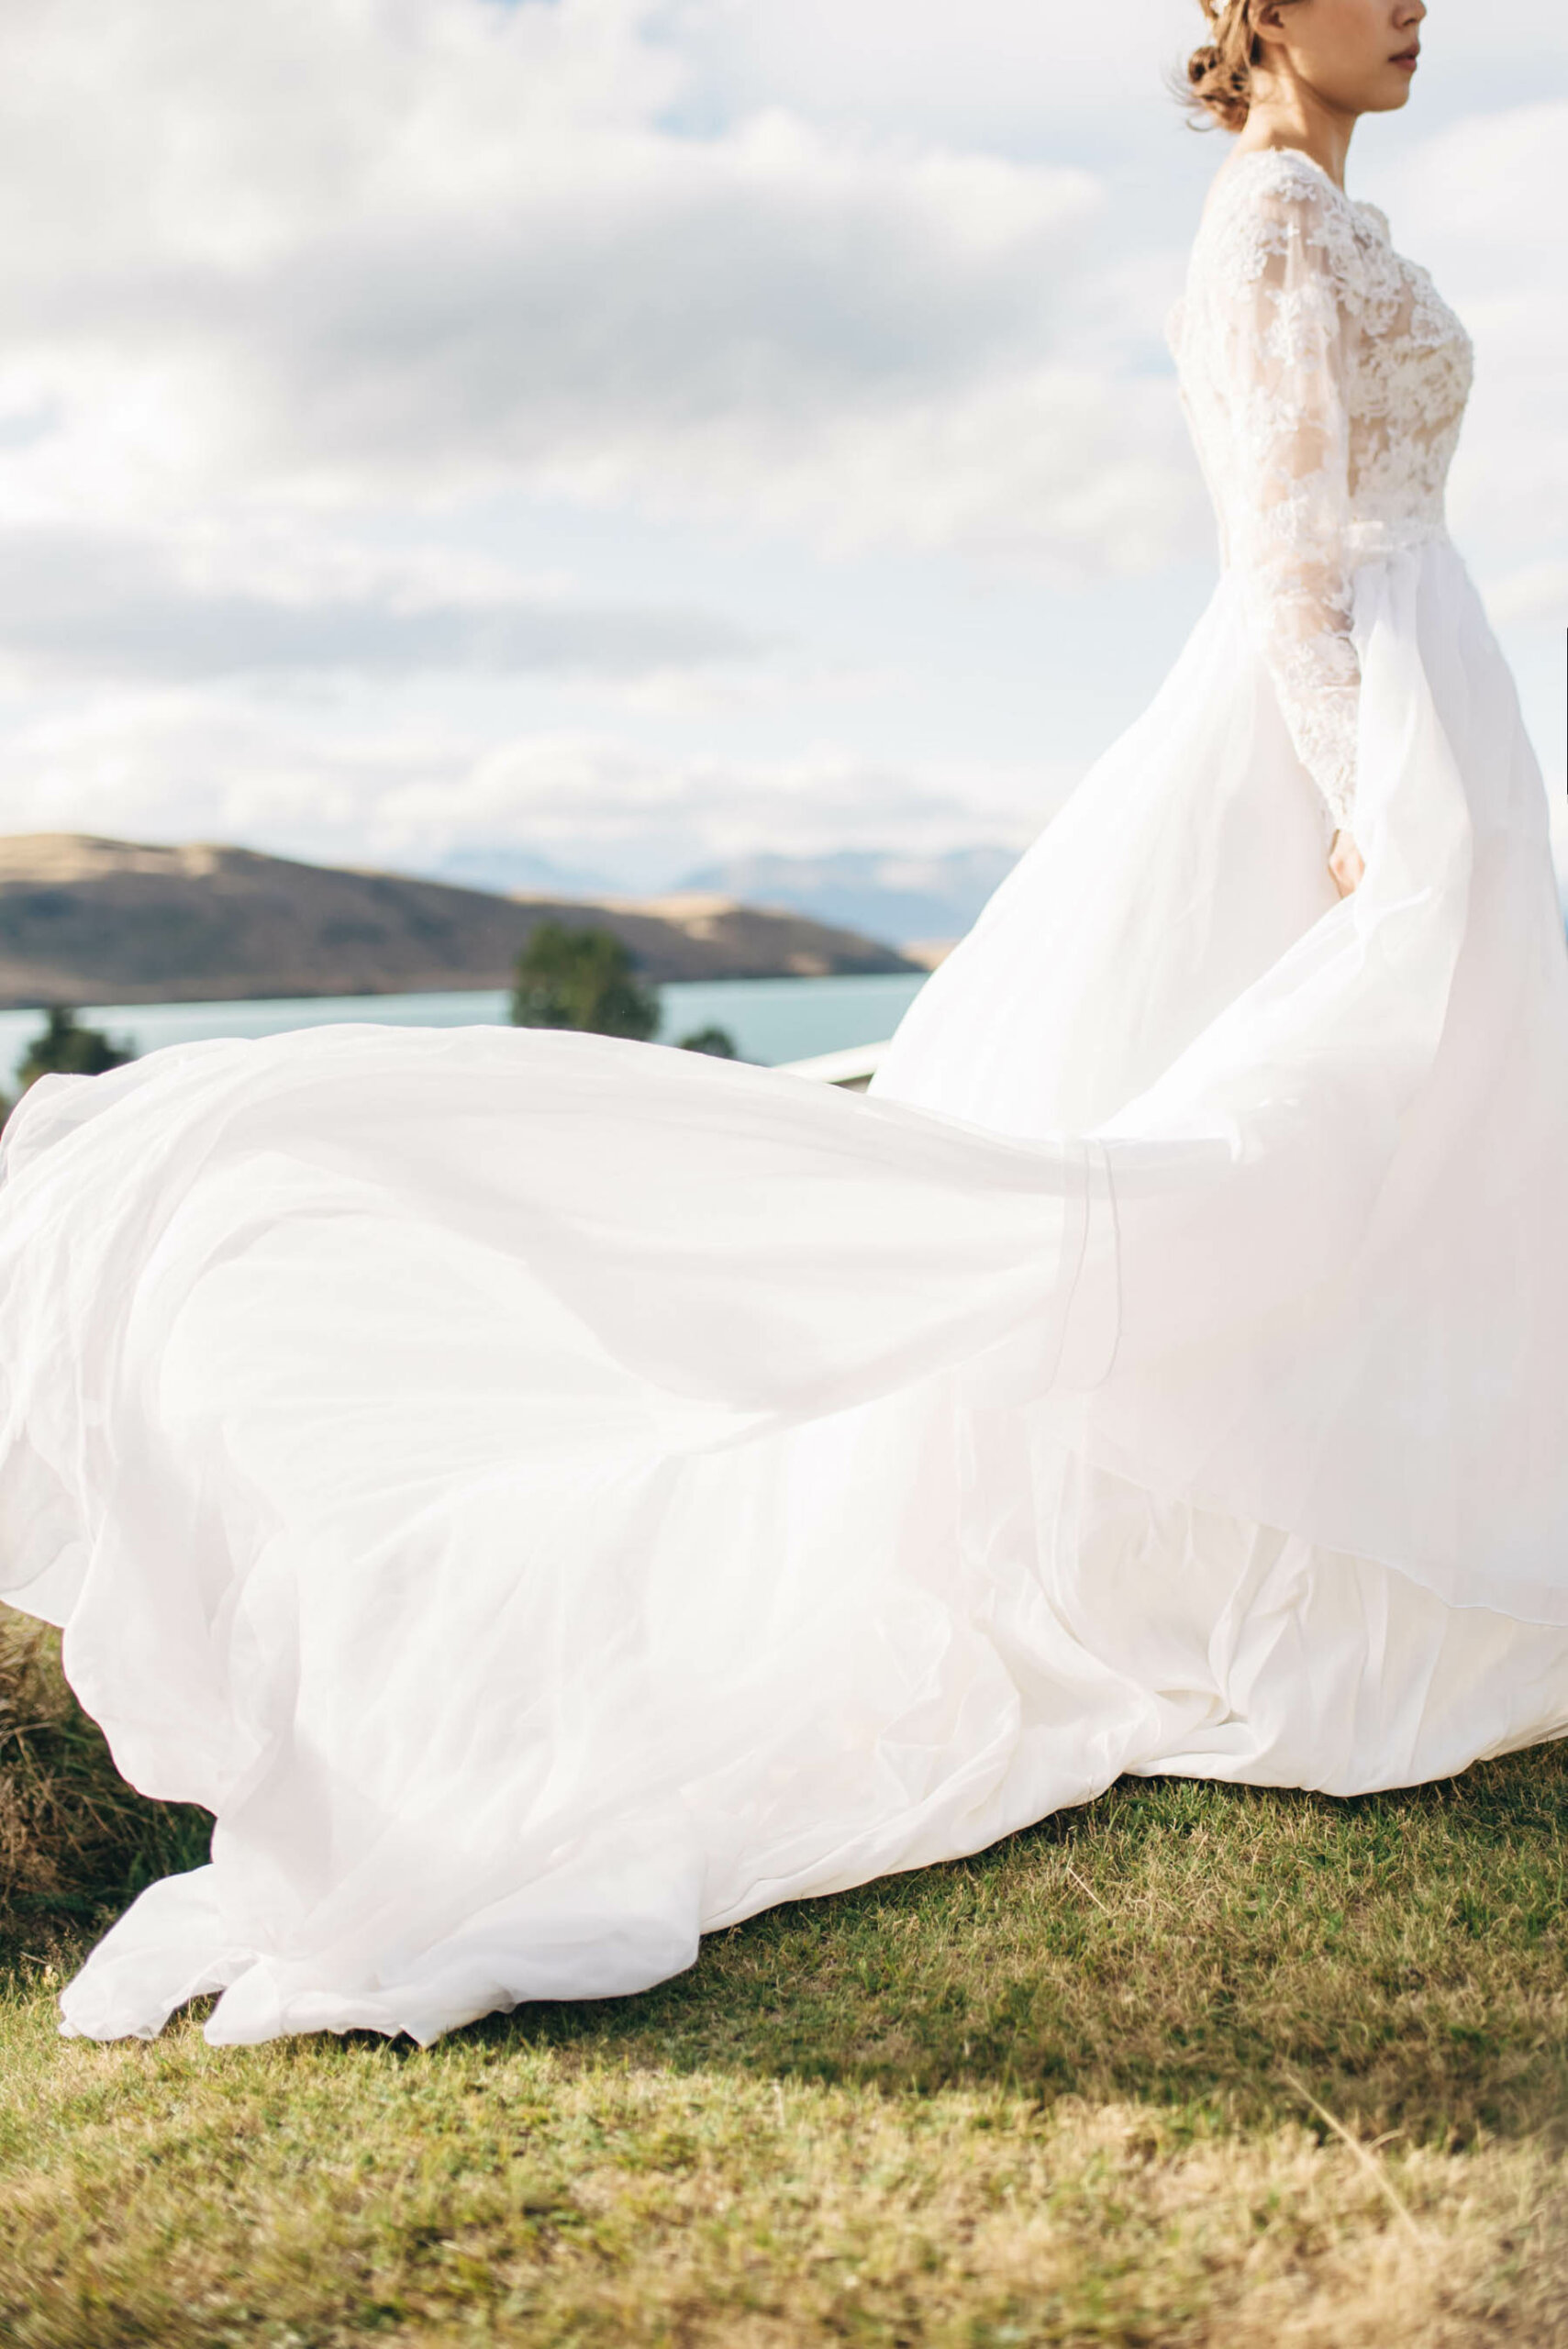 海外婚紗 紐西蘭蒂卡坡-Tekapo-婚紗-海外-南島-蒂卡波